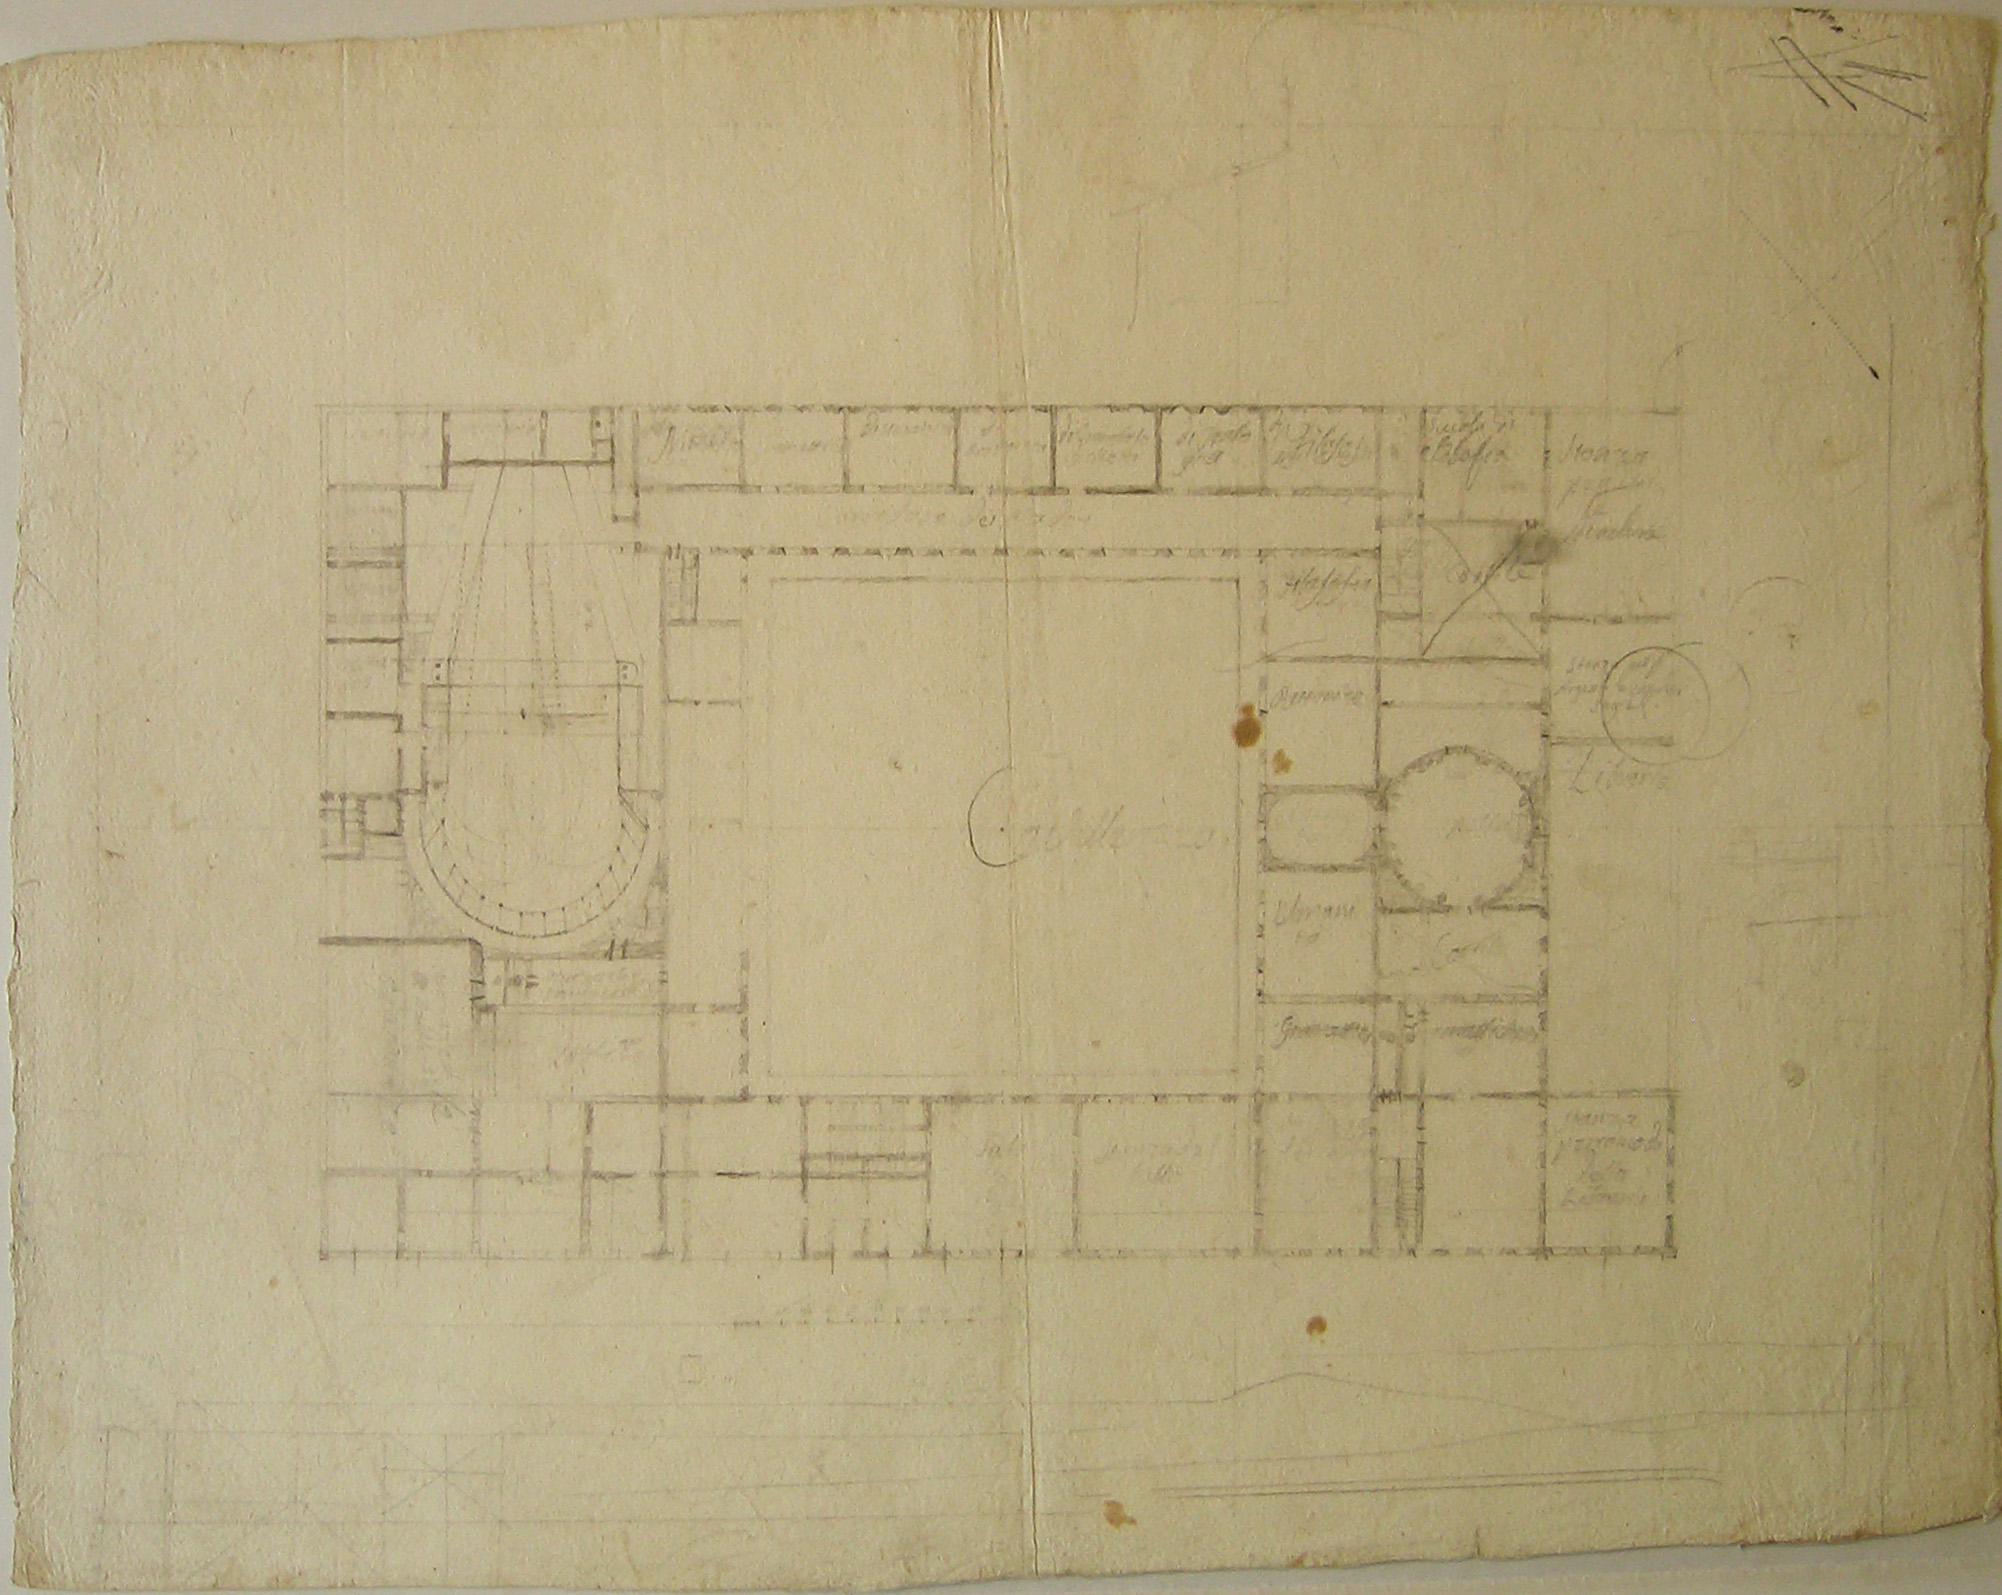 Progetto per collegio: pianta del piano nobile (disegno architettonico, opera isolata) di Cagnola Luigi (sec. XVIII)